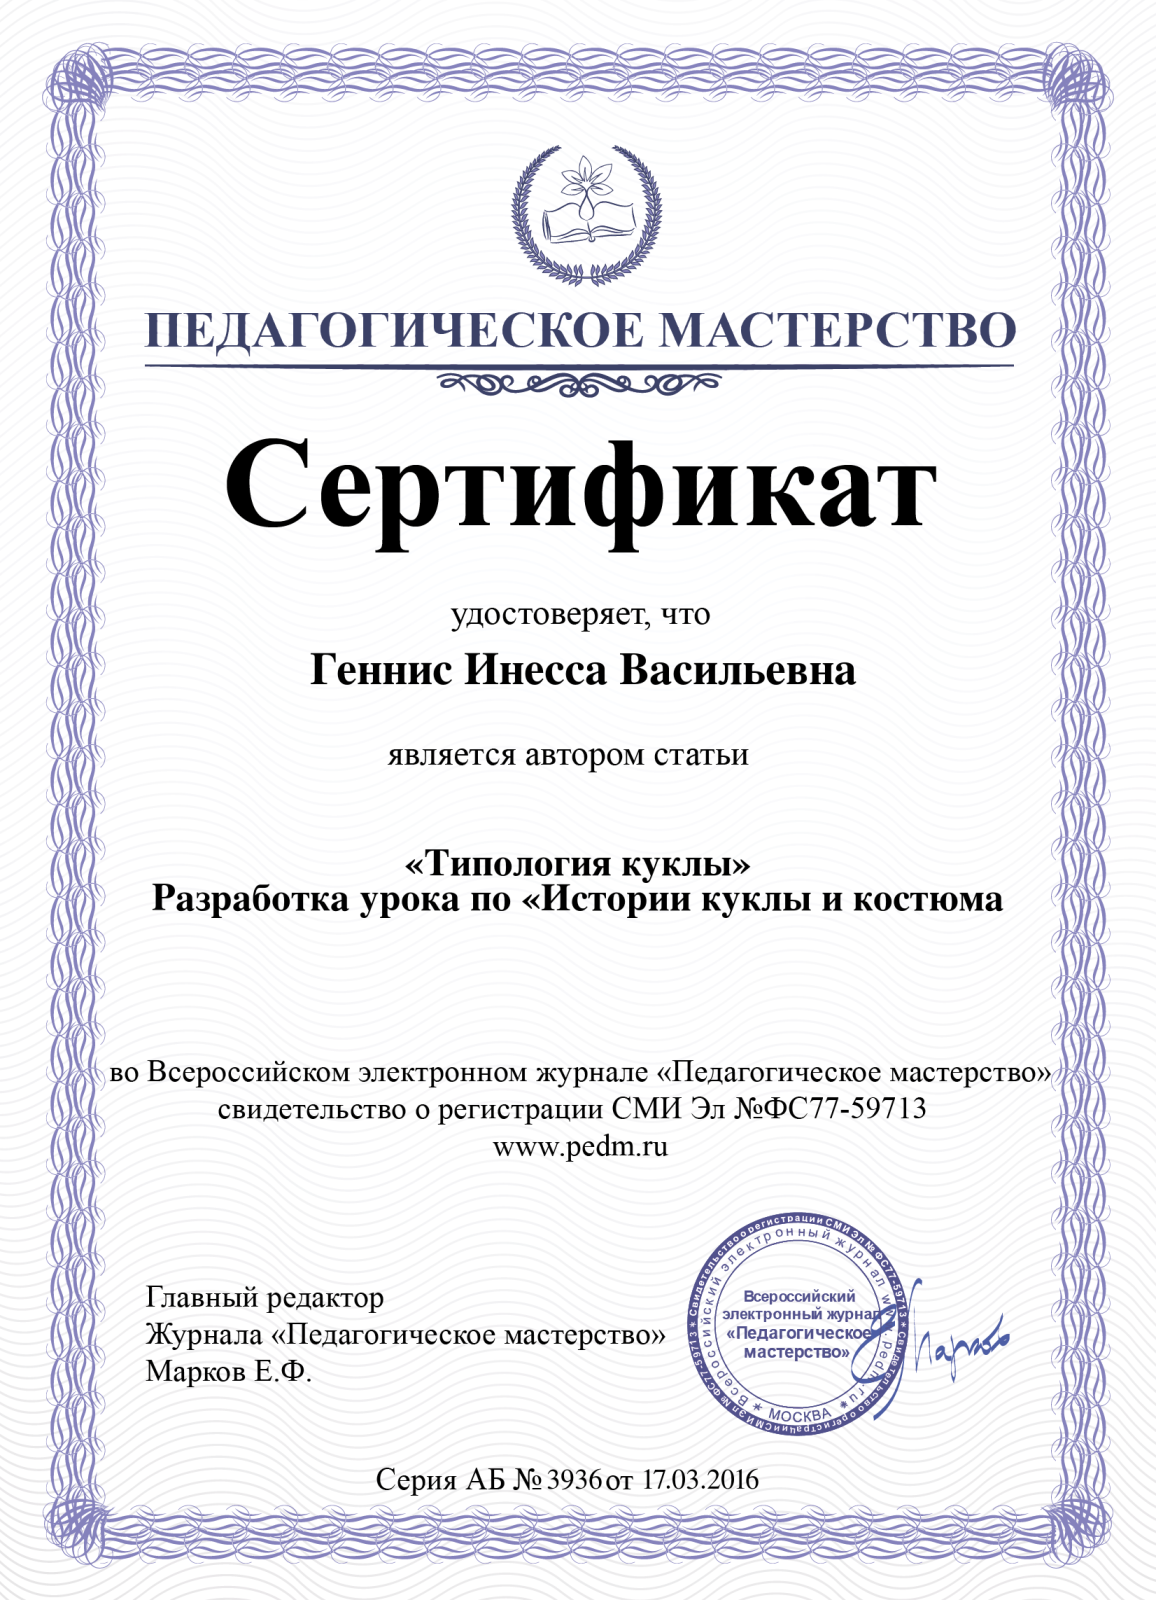 Сертификация статьи. Сертификат за публикацию. Сертификат о публикации статьи. Сертификаты для воспитателей за публикации. Свидетельство за публикацию.